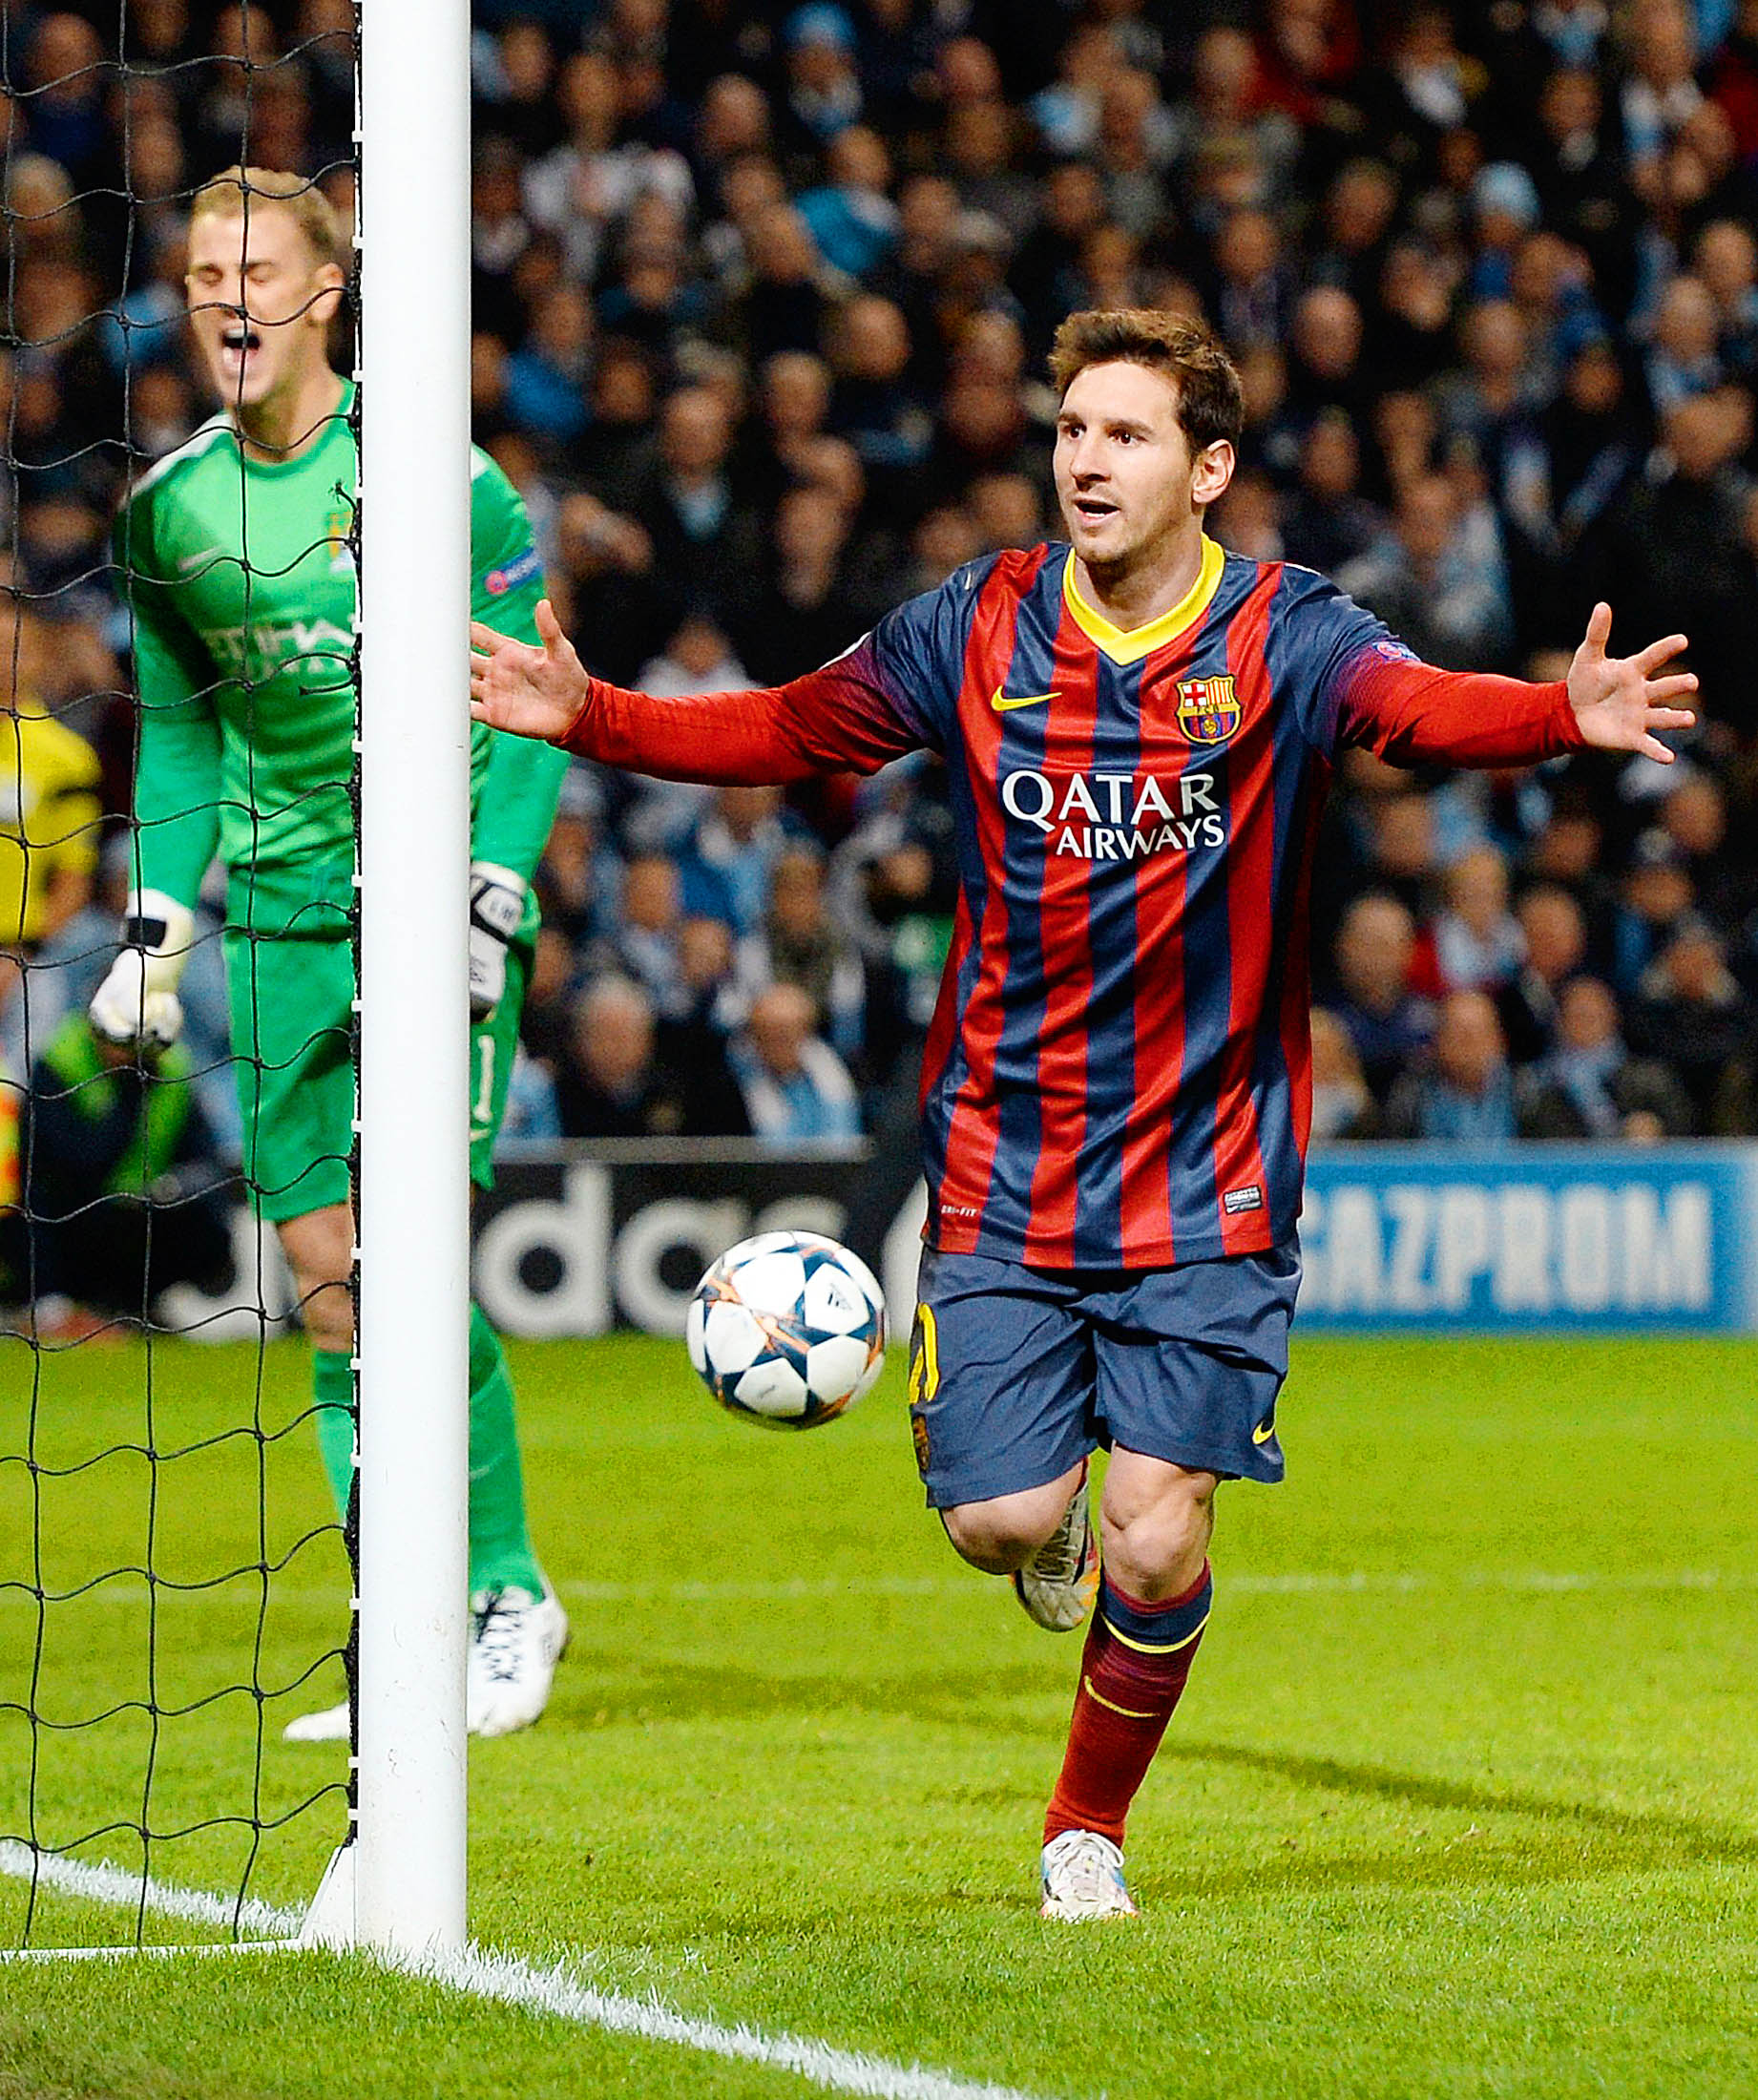 Tavaly ők döntöttek: a két meccs négy barcelonai gólját szerző Lionel Messi és Daniel Alves